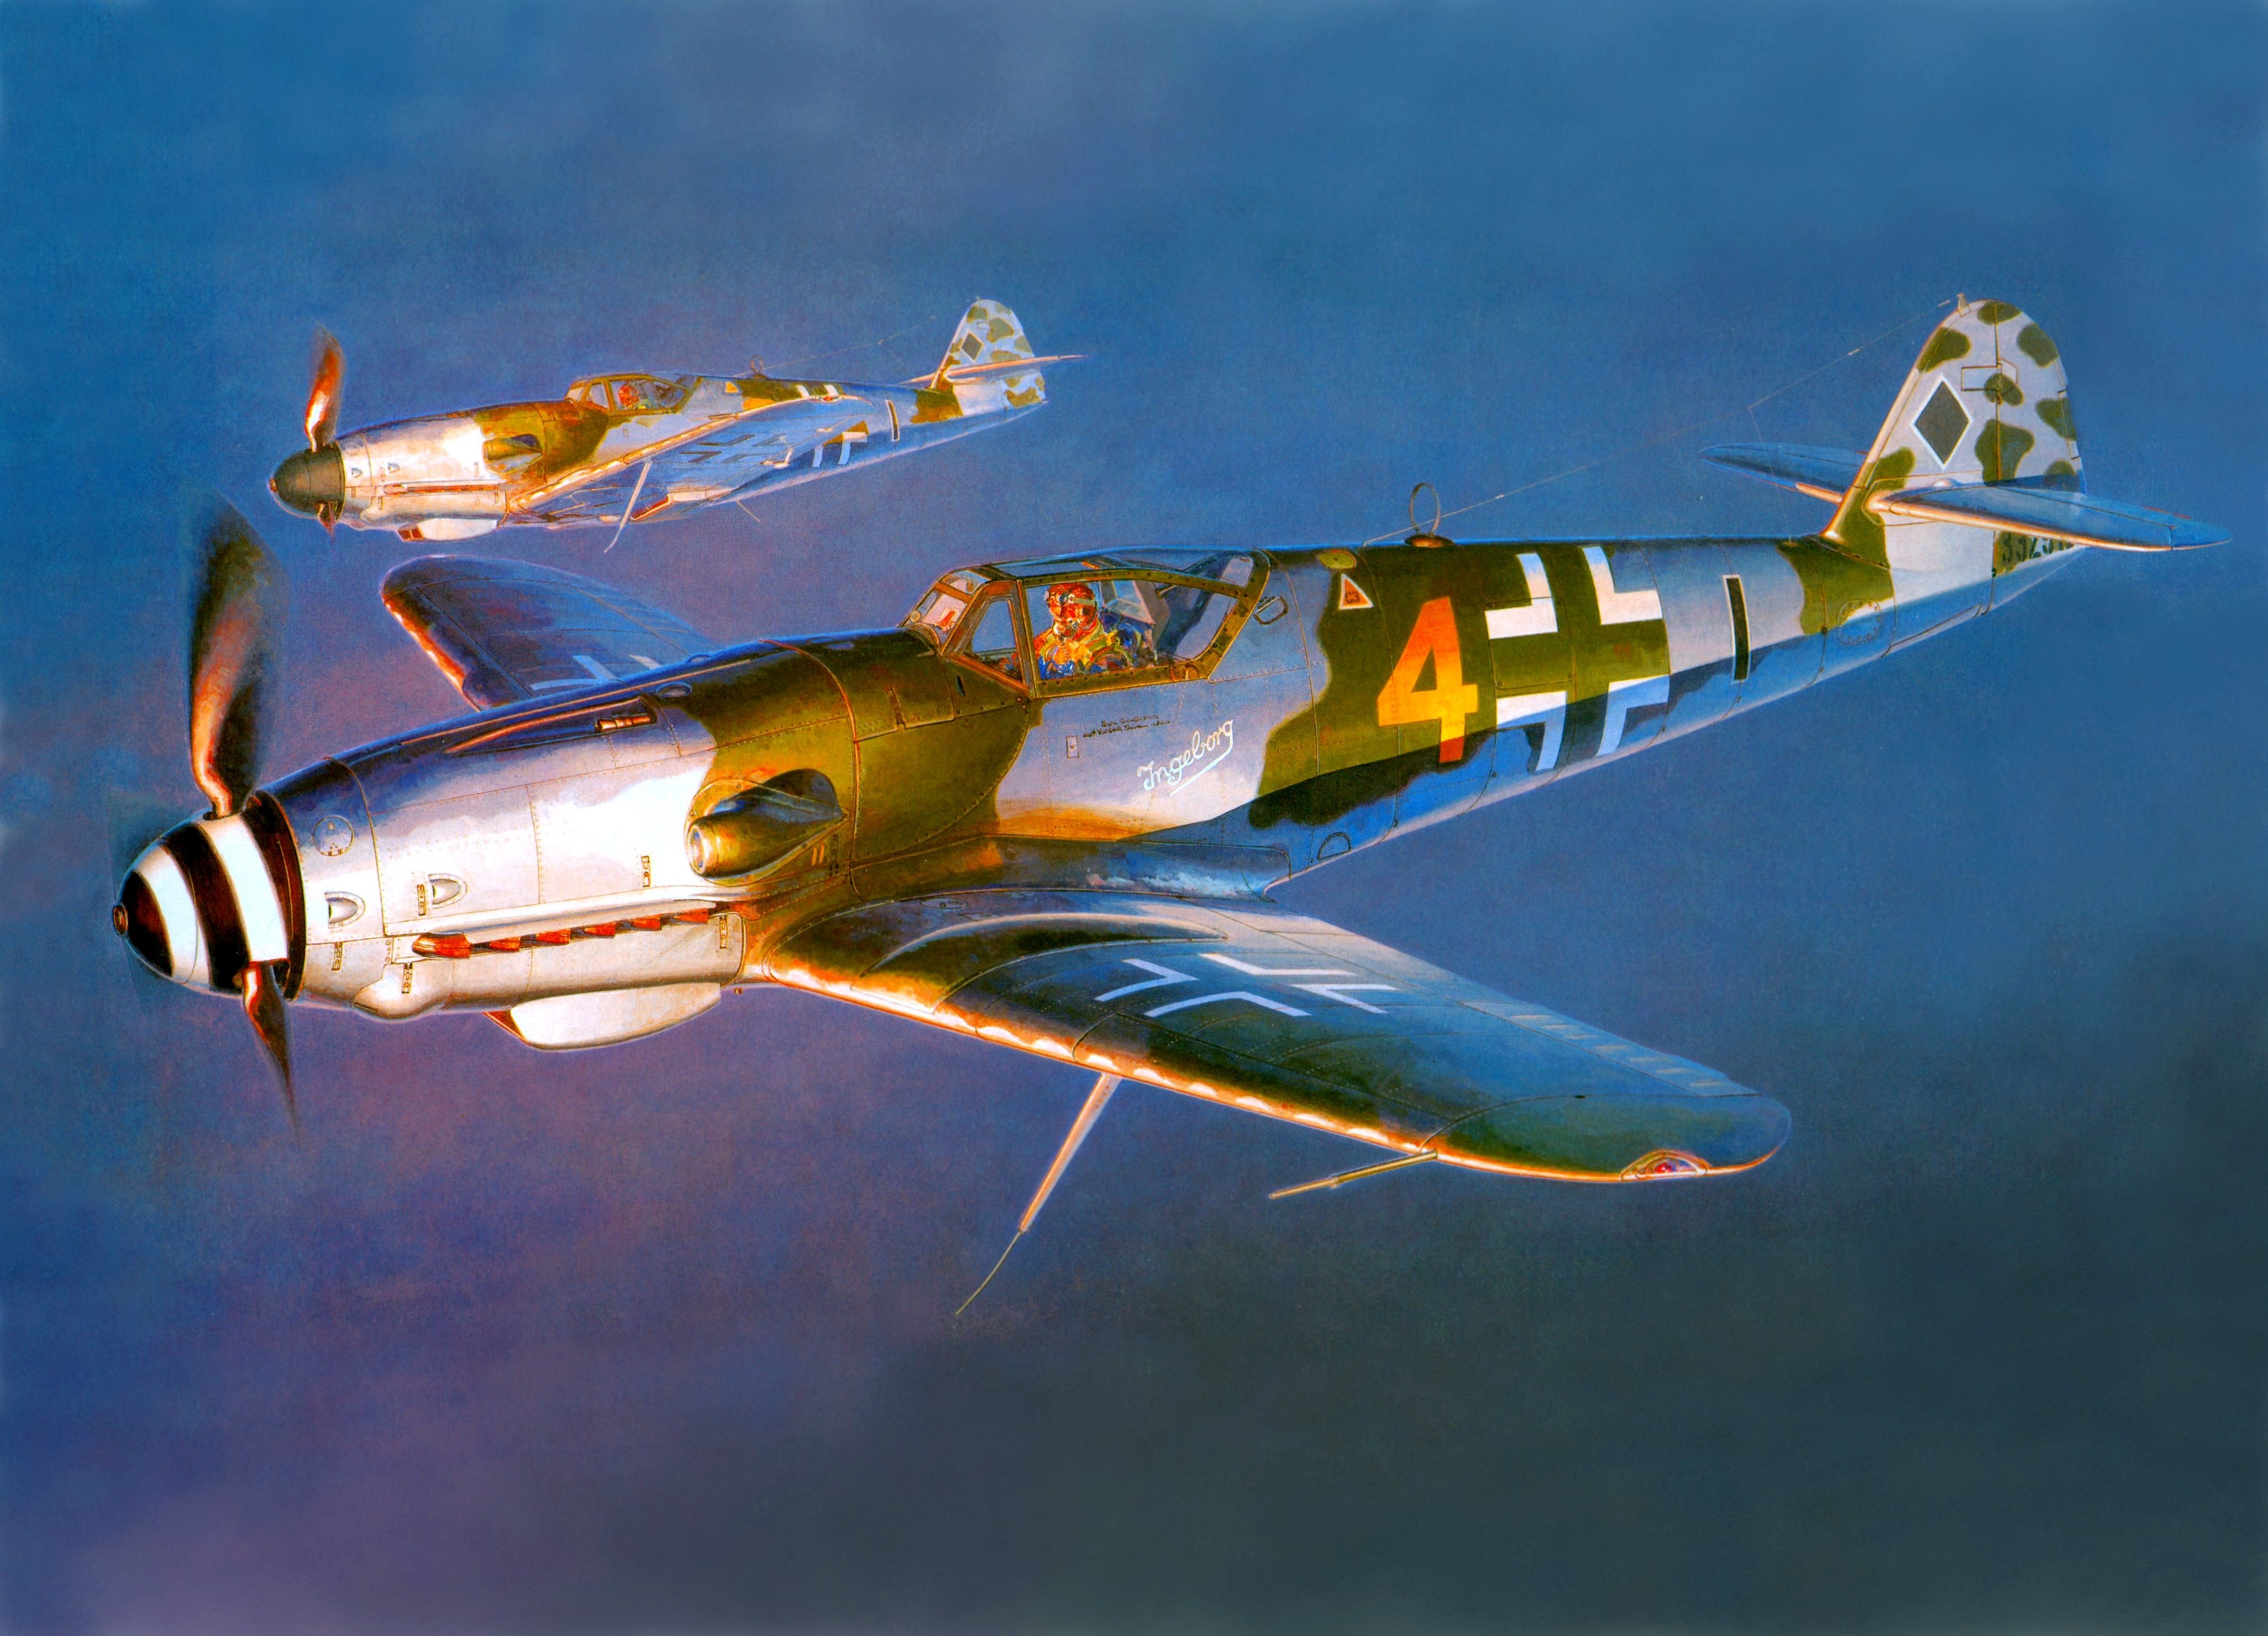 Messerschmitt Messerschmitt Bf 109 World War Ii Germany Military Aircraft Military Aircraft Luftwaff 4104x2960